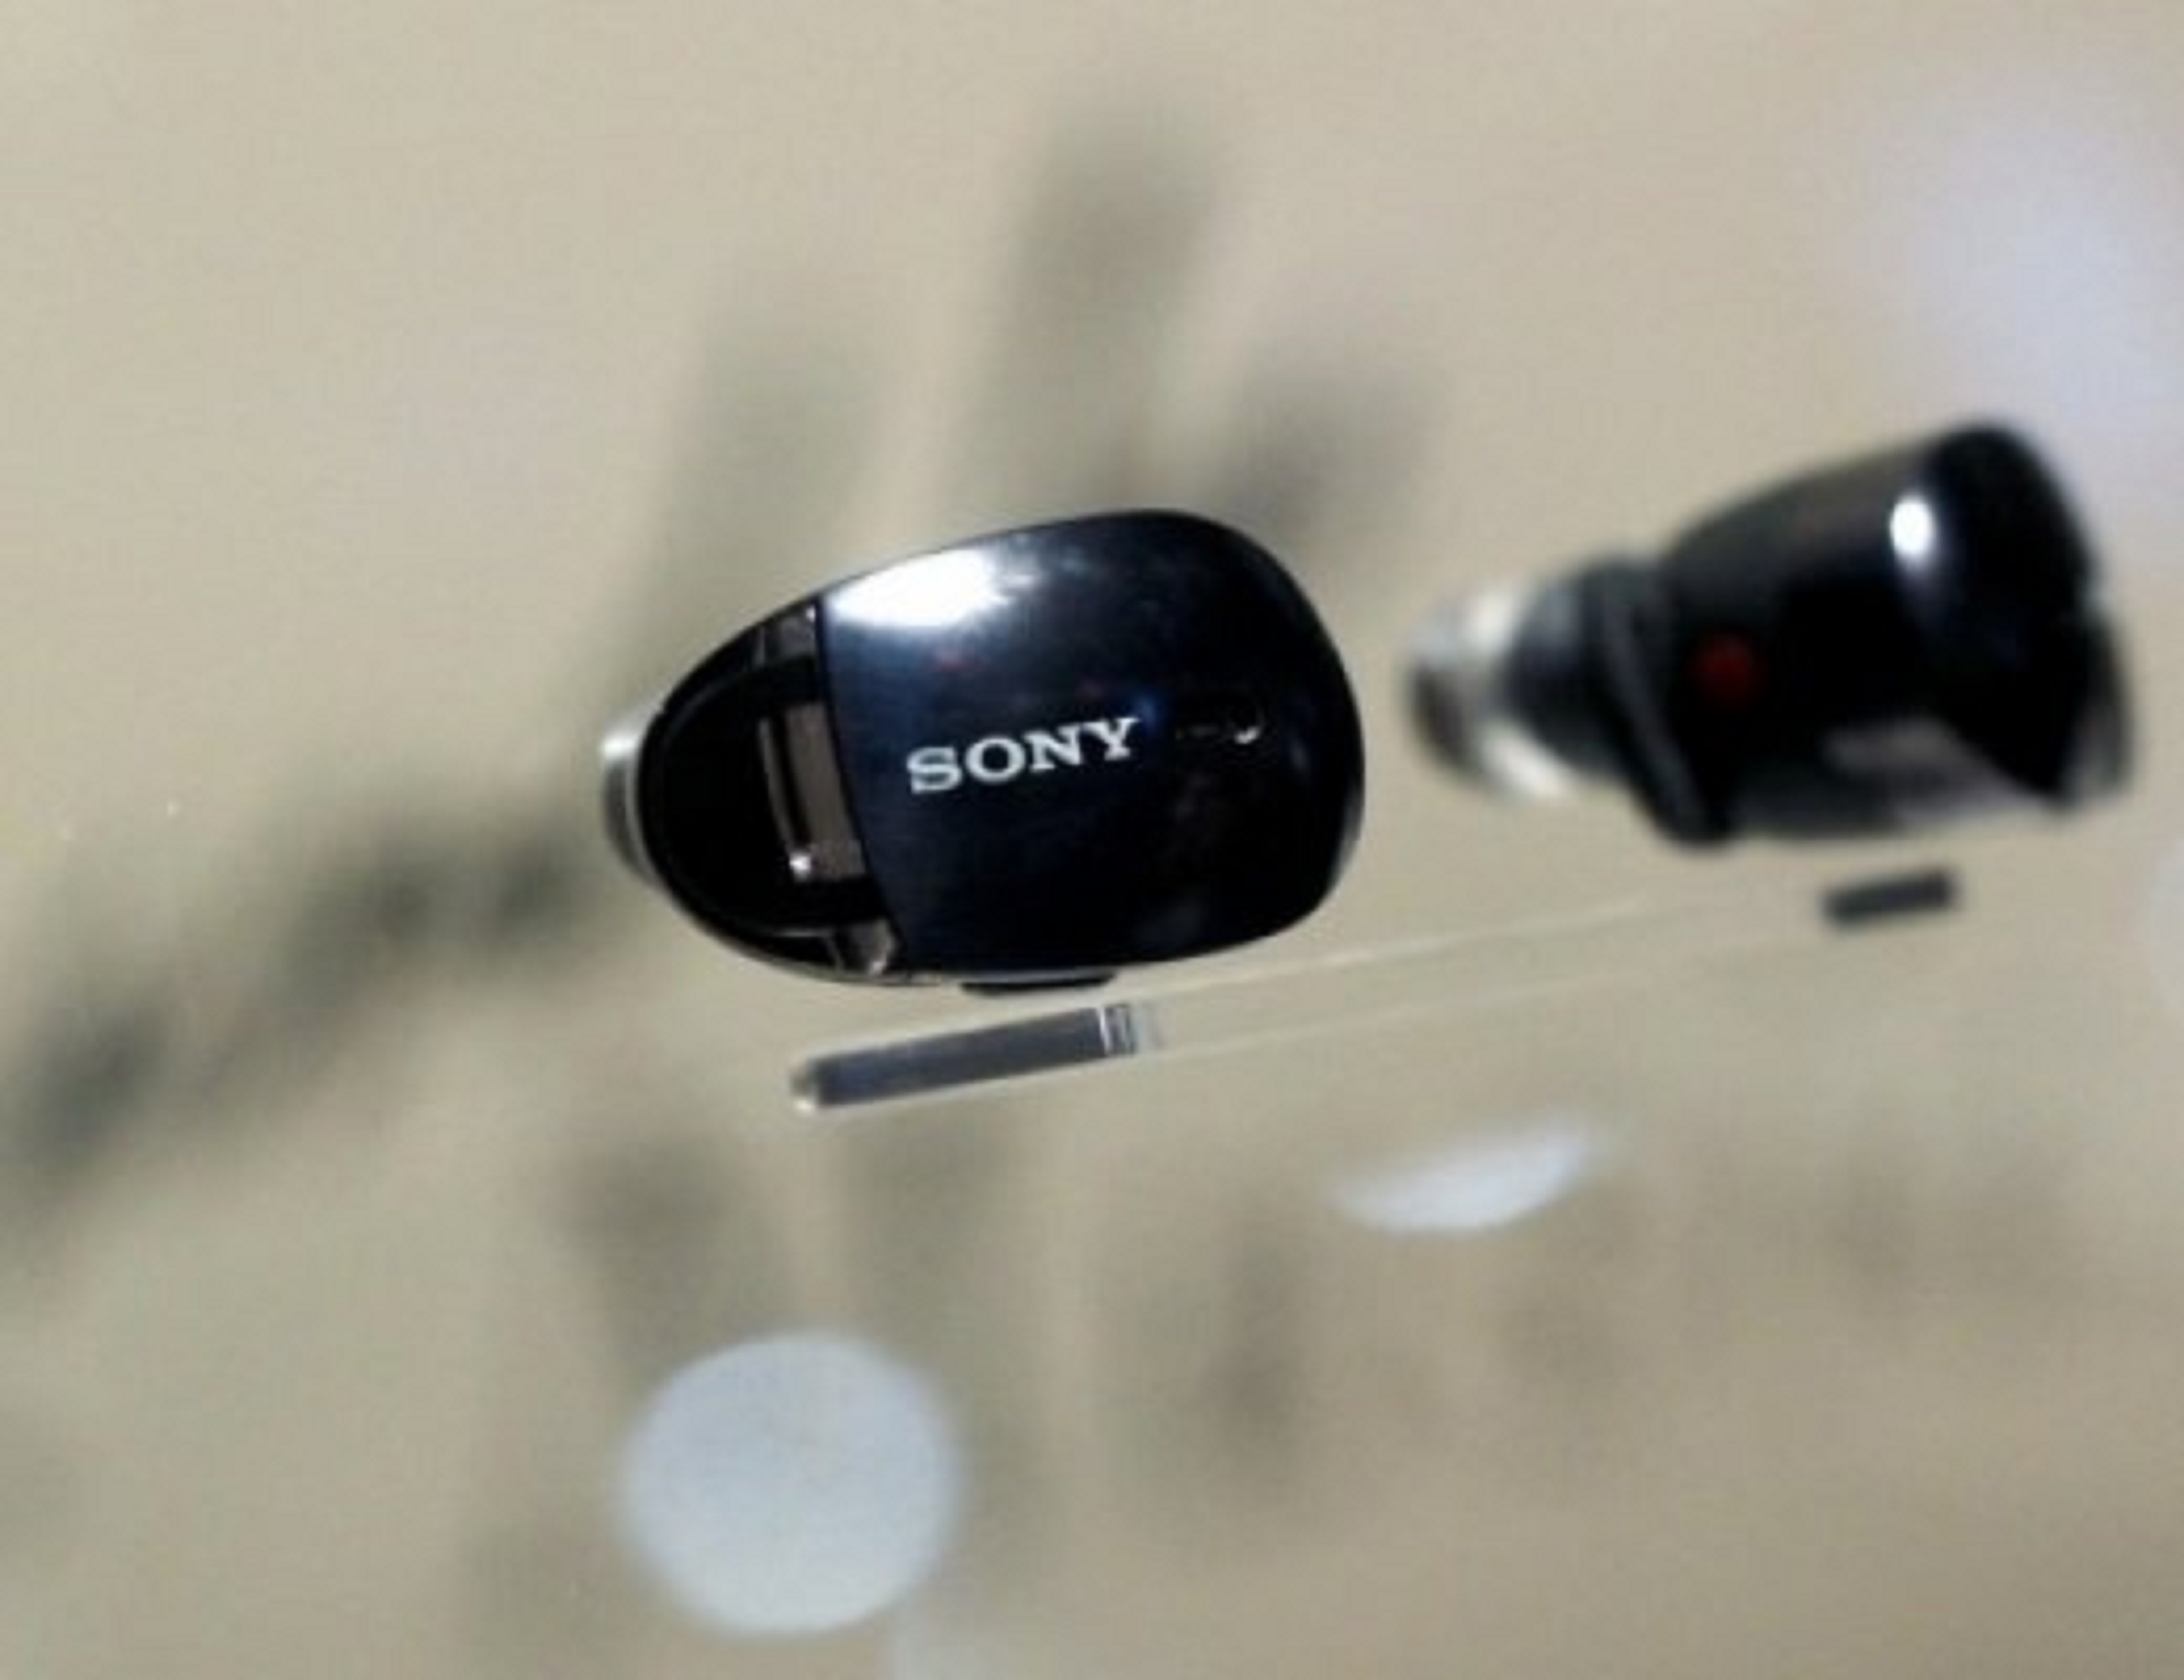 “Sony” fitoi mbi 11 miliardë dollarë në 2020